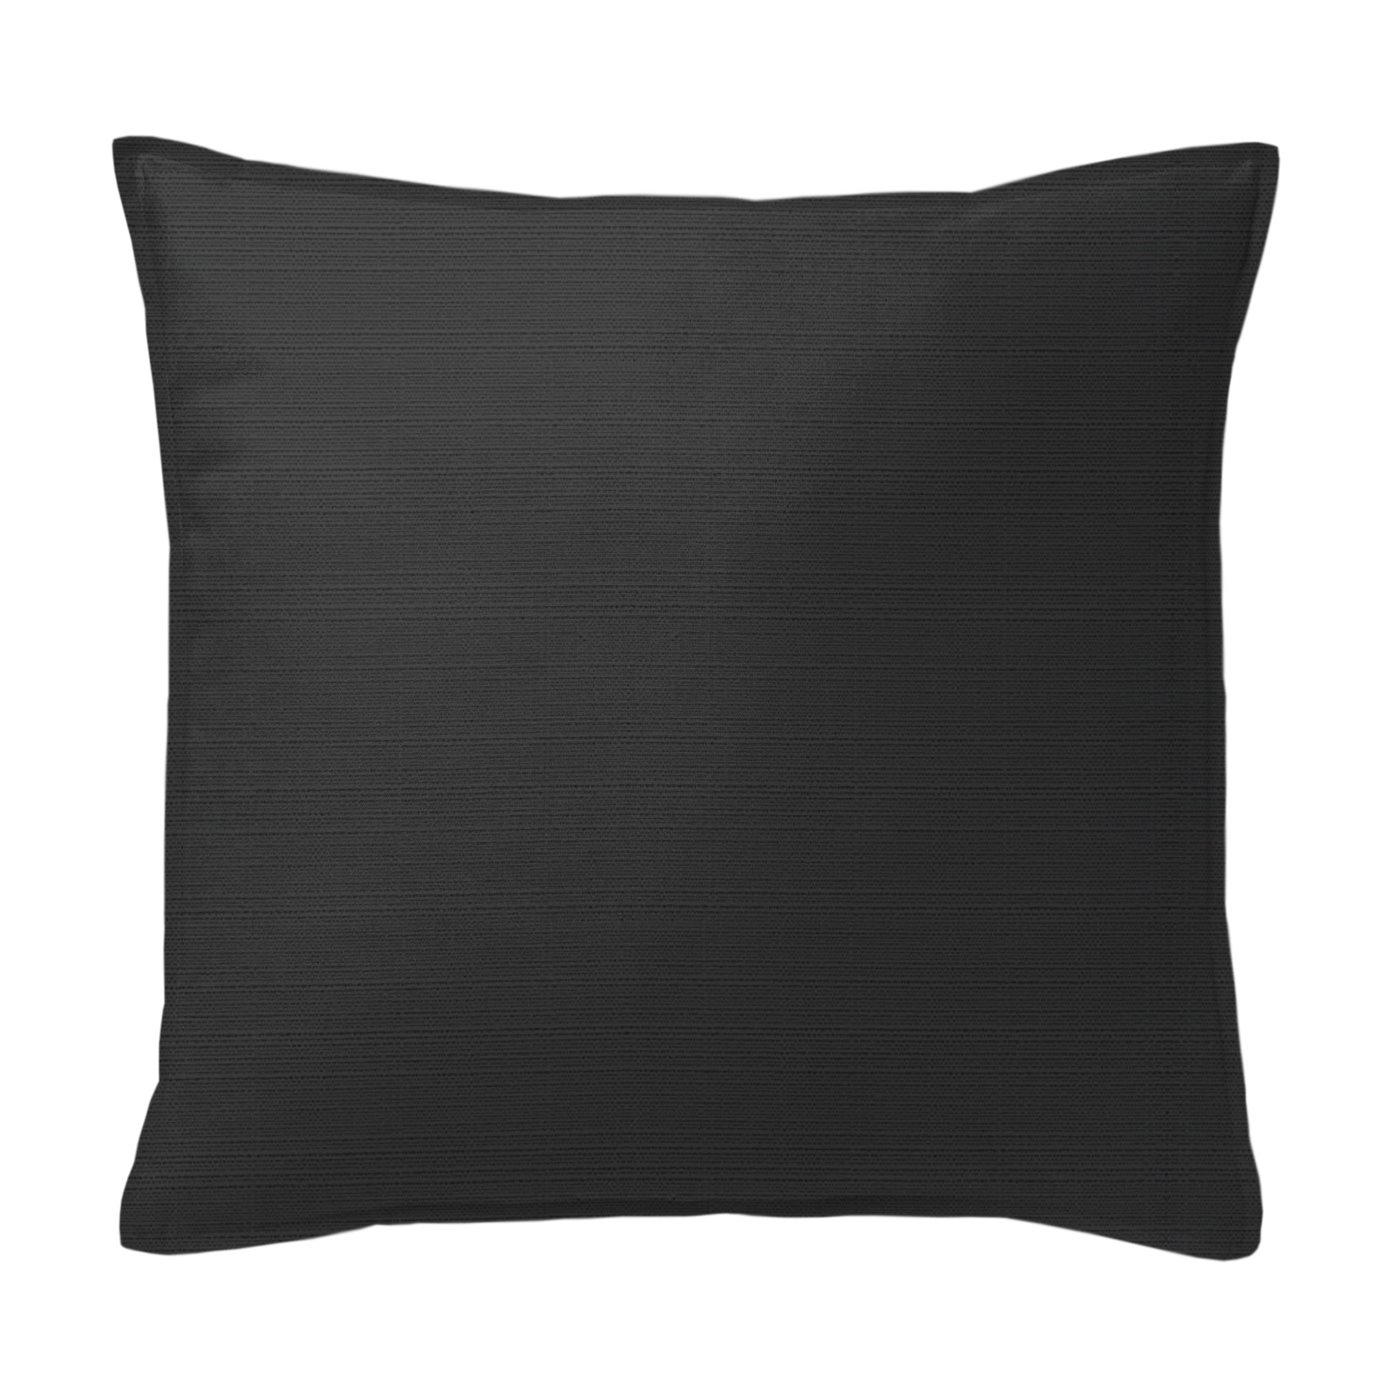 Nova Black Decorative Pillow - Size 24" Square